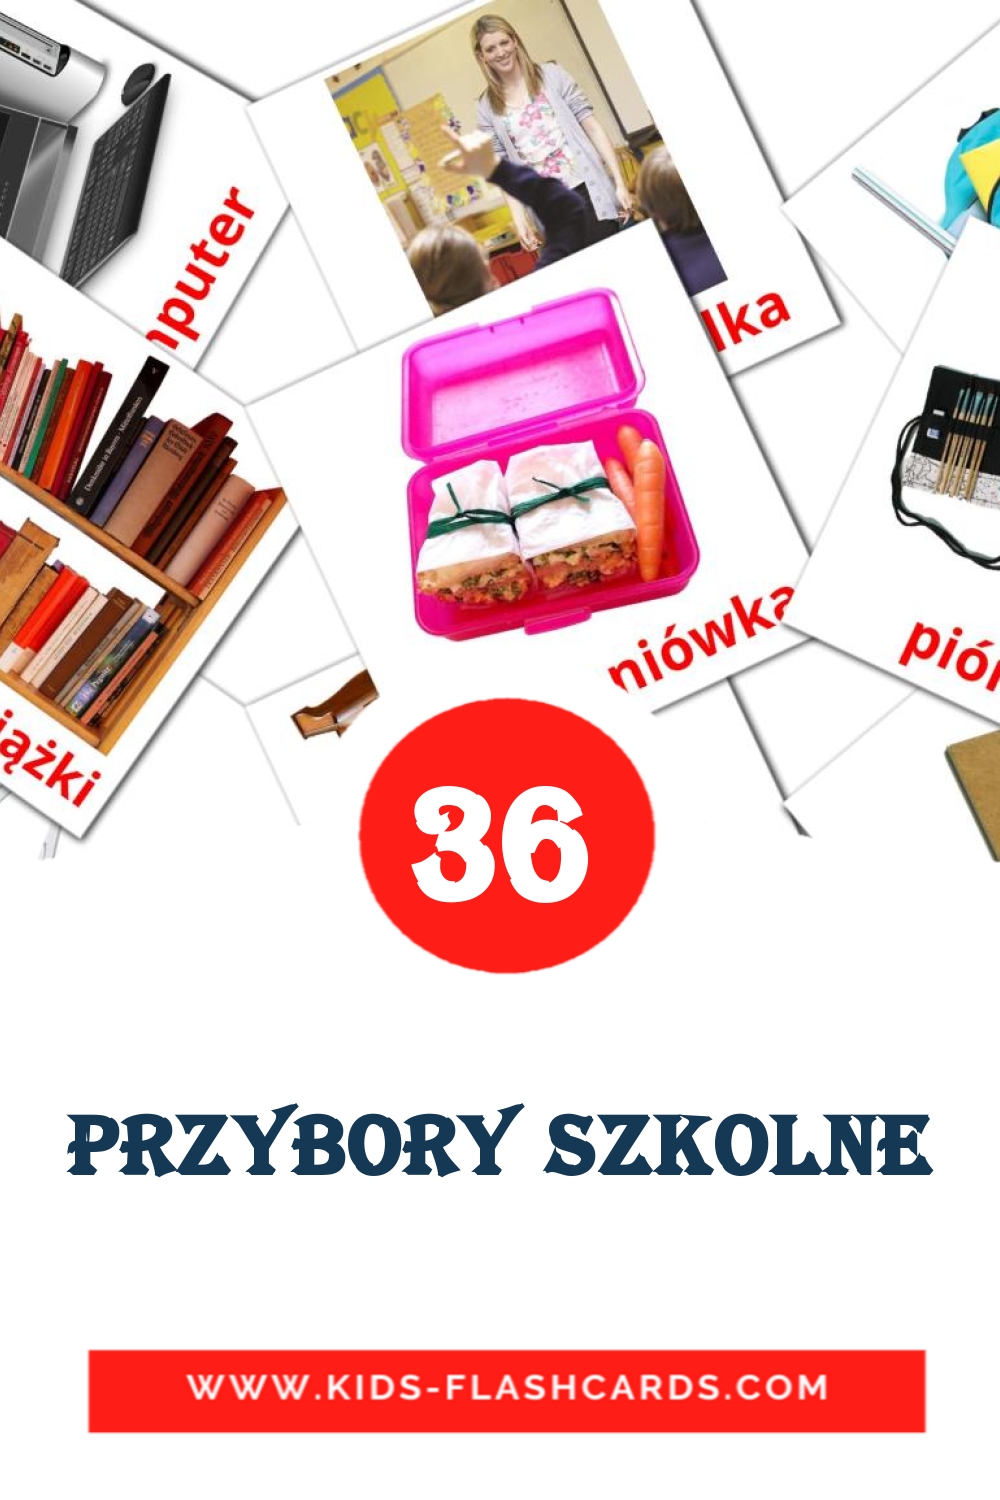 Przybory szkolne на польском для Детского Сада (36 карточек)